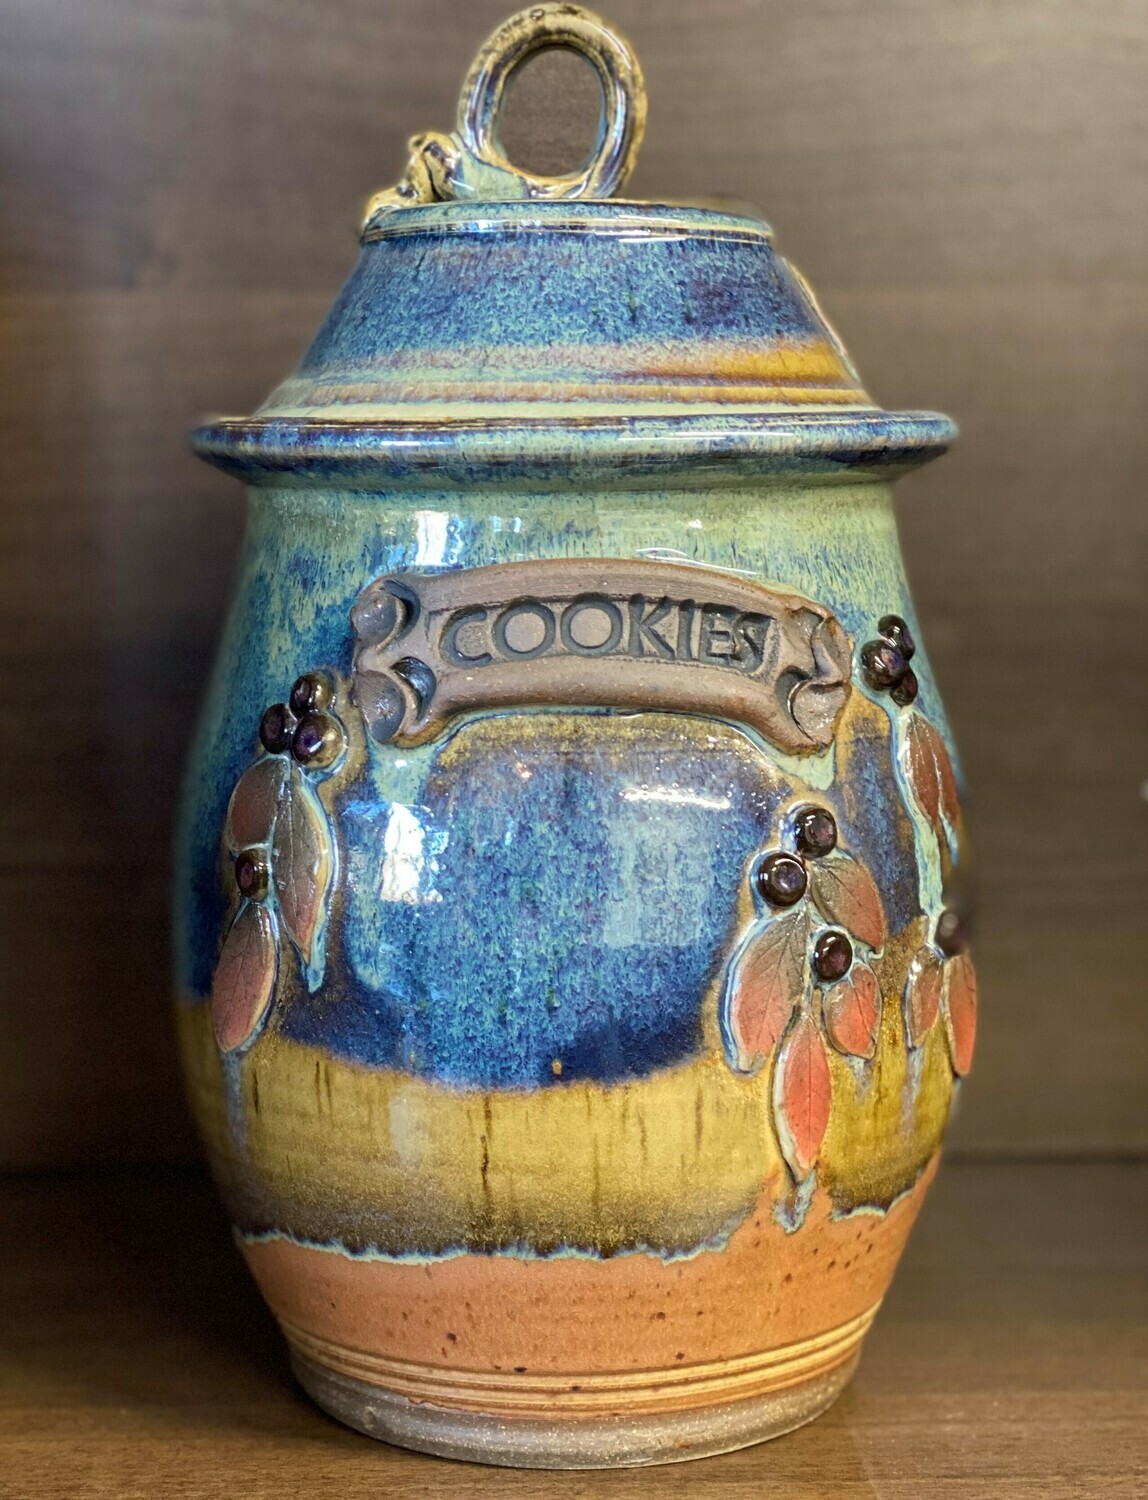 Cookie Jar (Huckleberry)